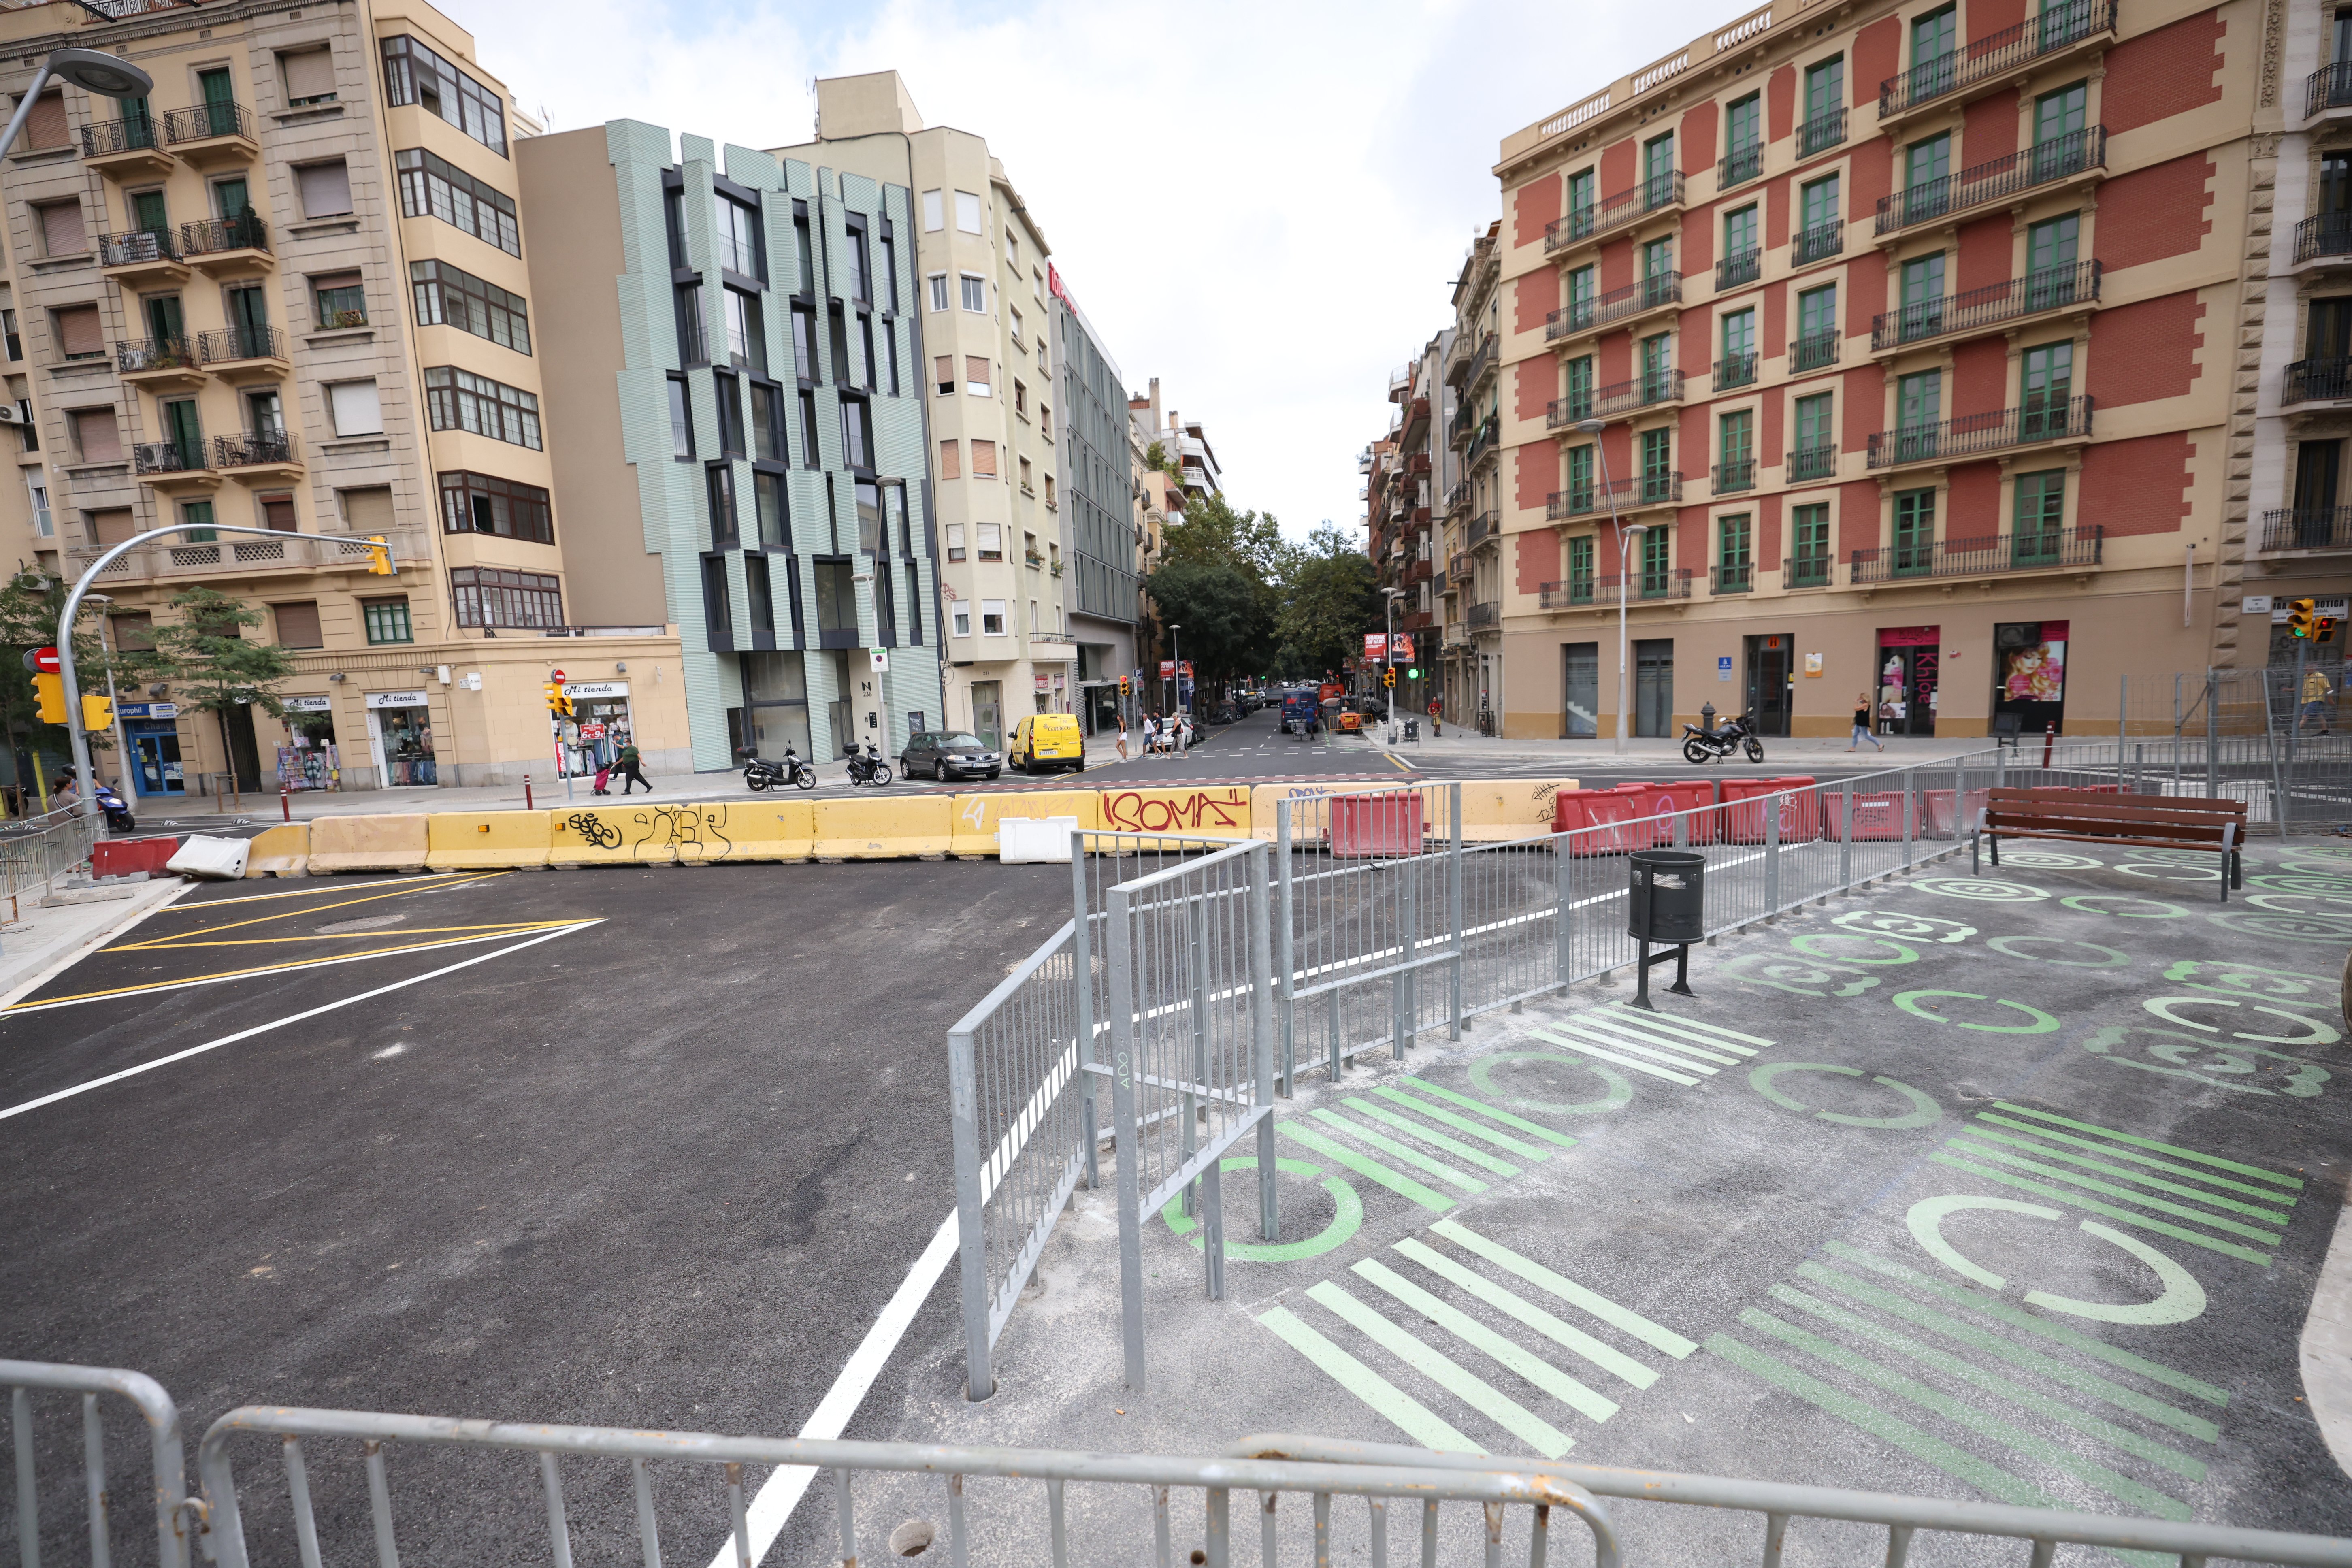 Més urbanisme tàctic? Barcelona vol pacificar 73 entorns escolars més